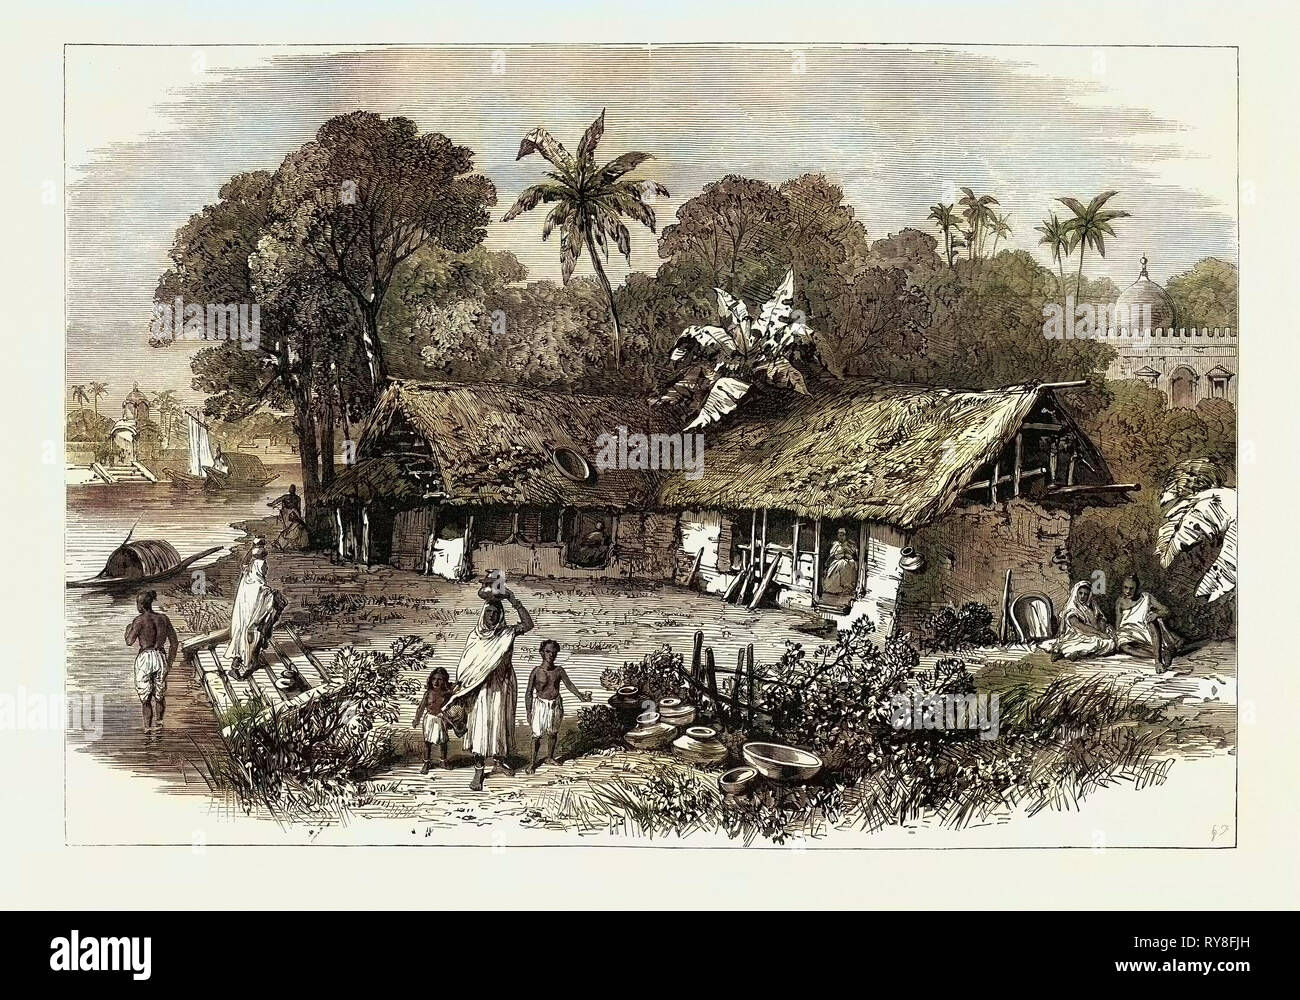 La carestia in India: un villaggio del Bengala 1874 Foto Stock